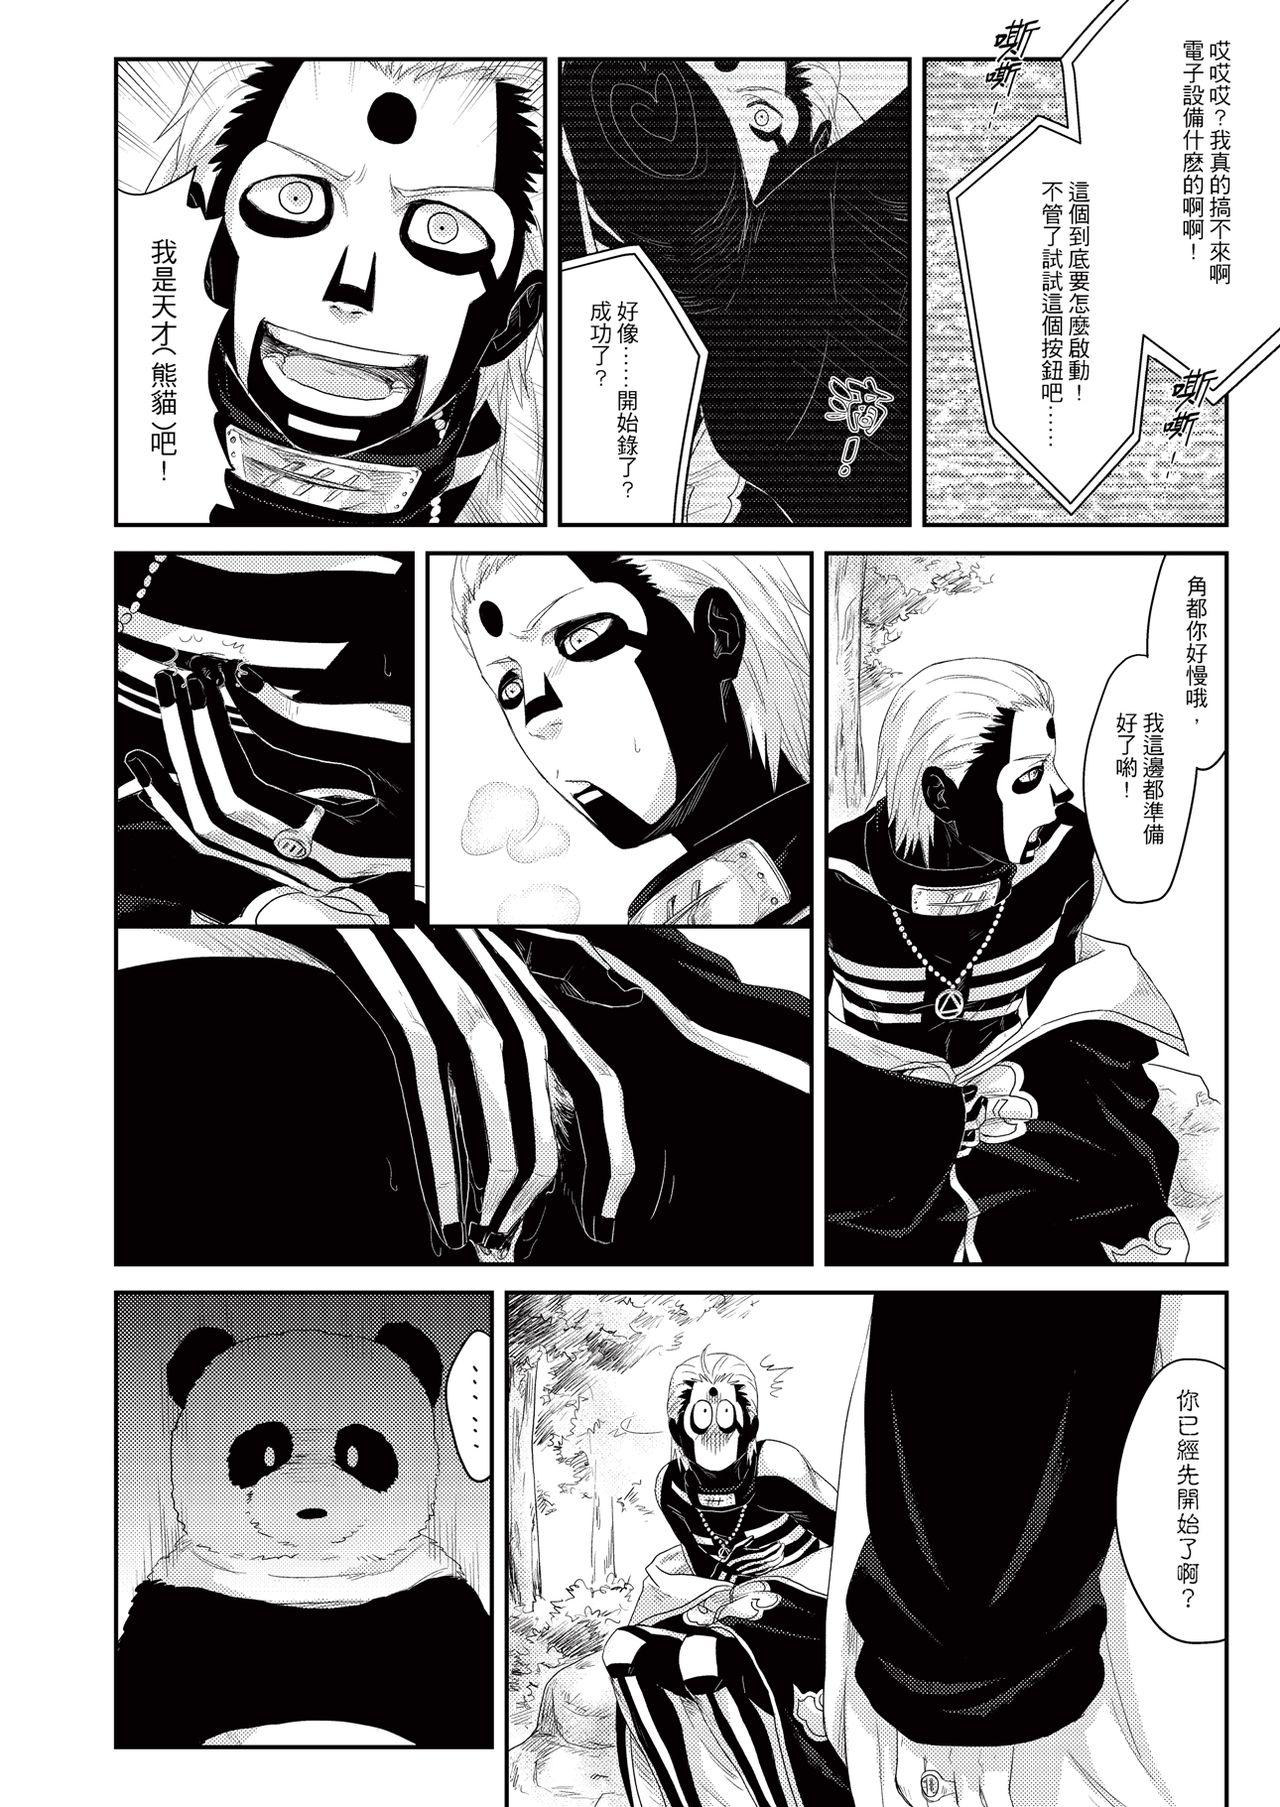 Panda Teaching 5